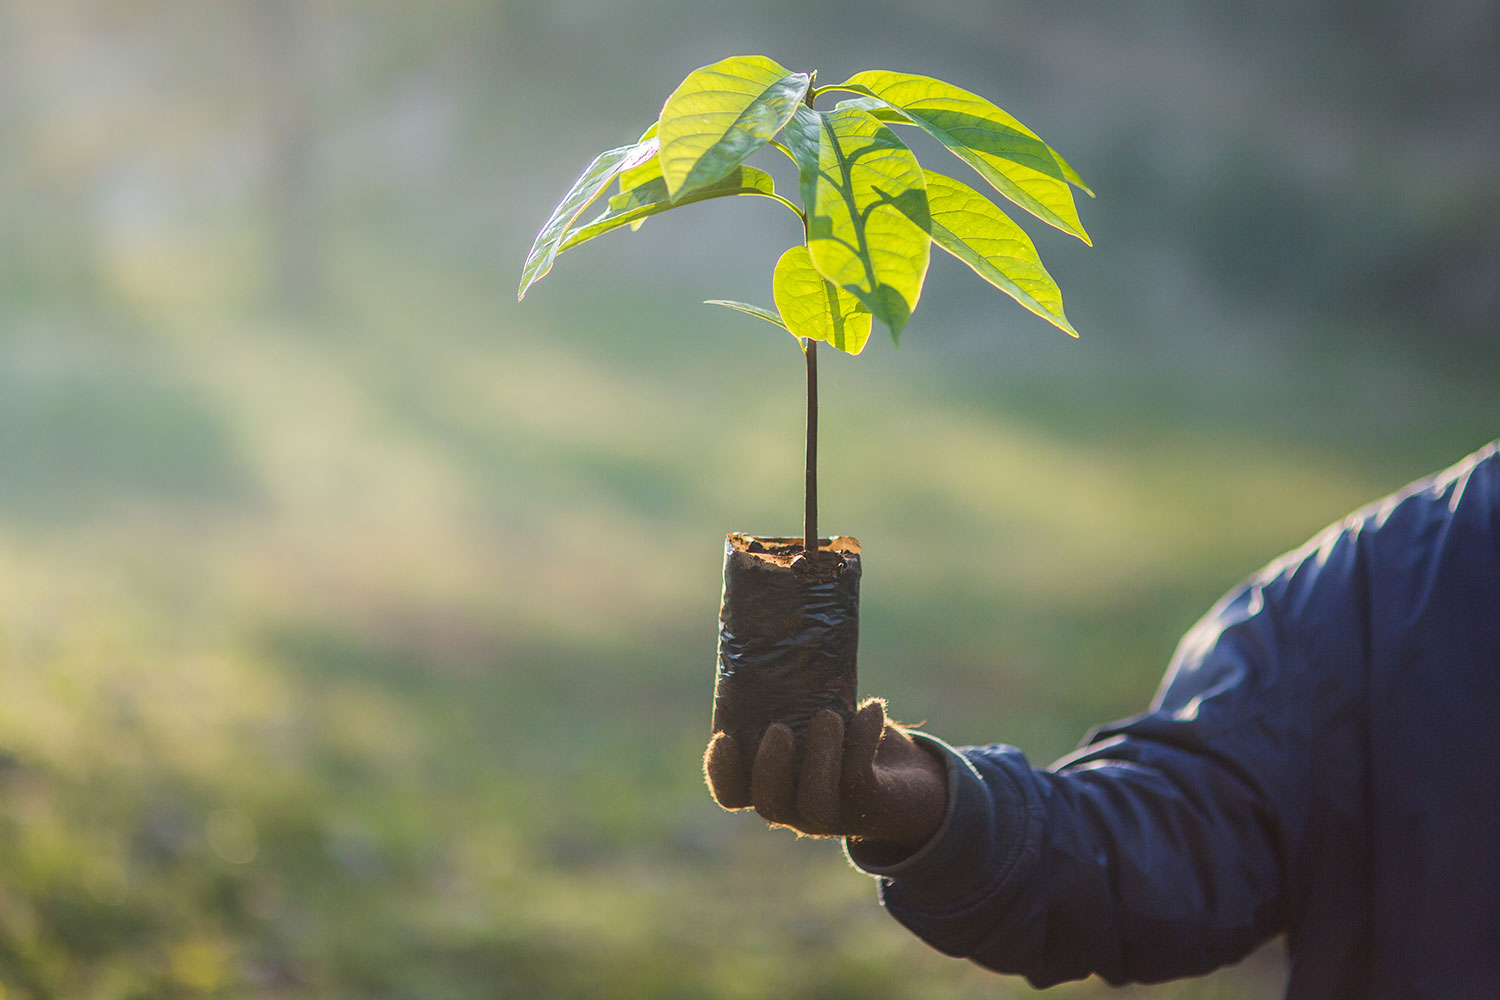 وفقًا للعلم سنستعرض مدى تأثير زراعة الأشجار على المناخ - هل من الممكن أن تساهم زراعة الأشجار في القضاء على الاحتباس الحراري